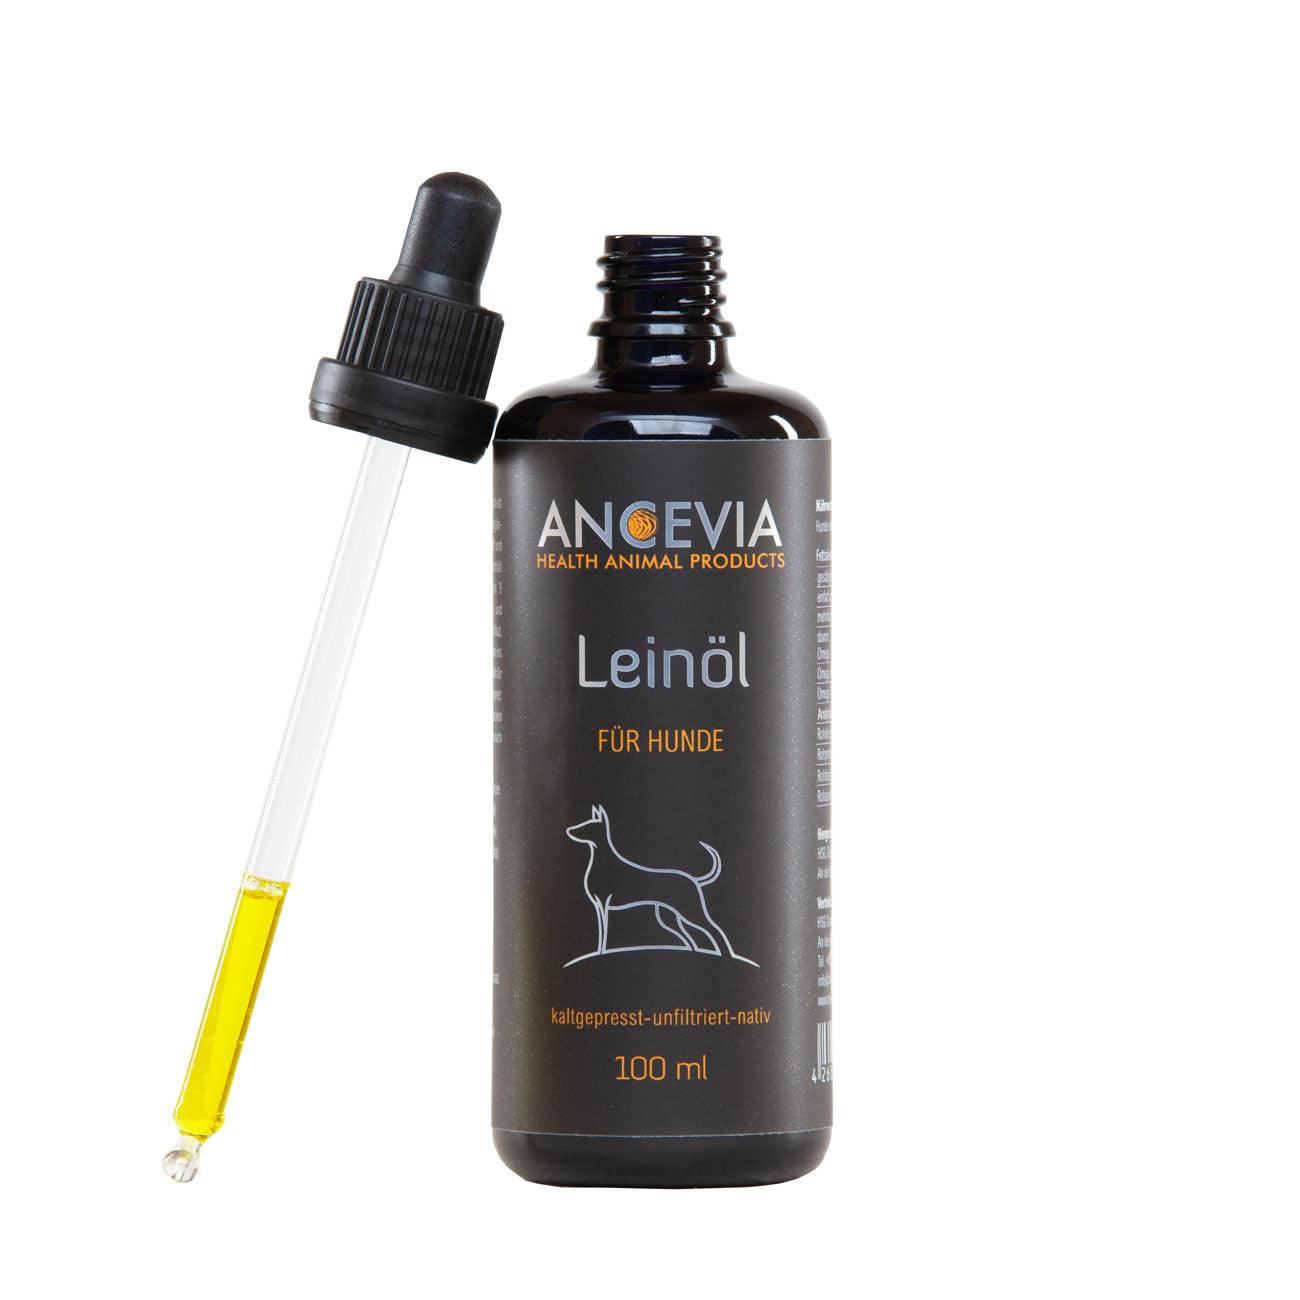 Ancevia® Leinöl für Hunde 100 ml - bever-naturversand